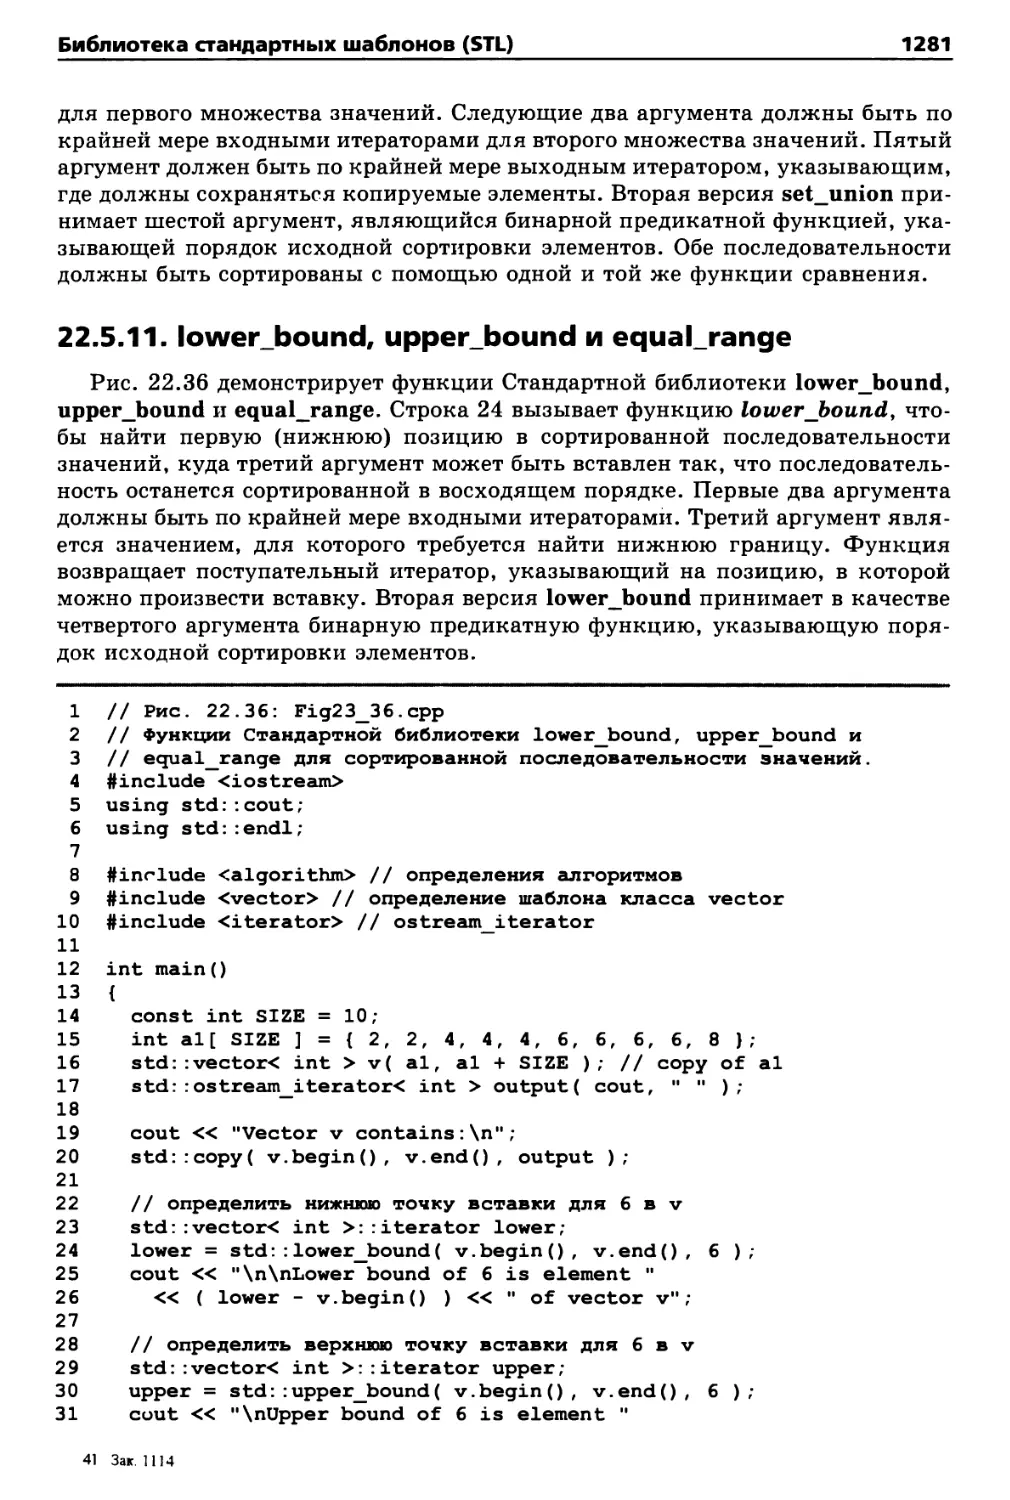 22.5.11. lower_bound, upper_bound и equal_range